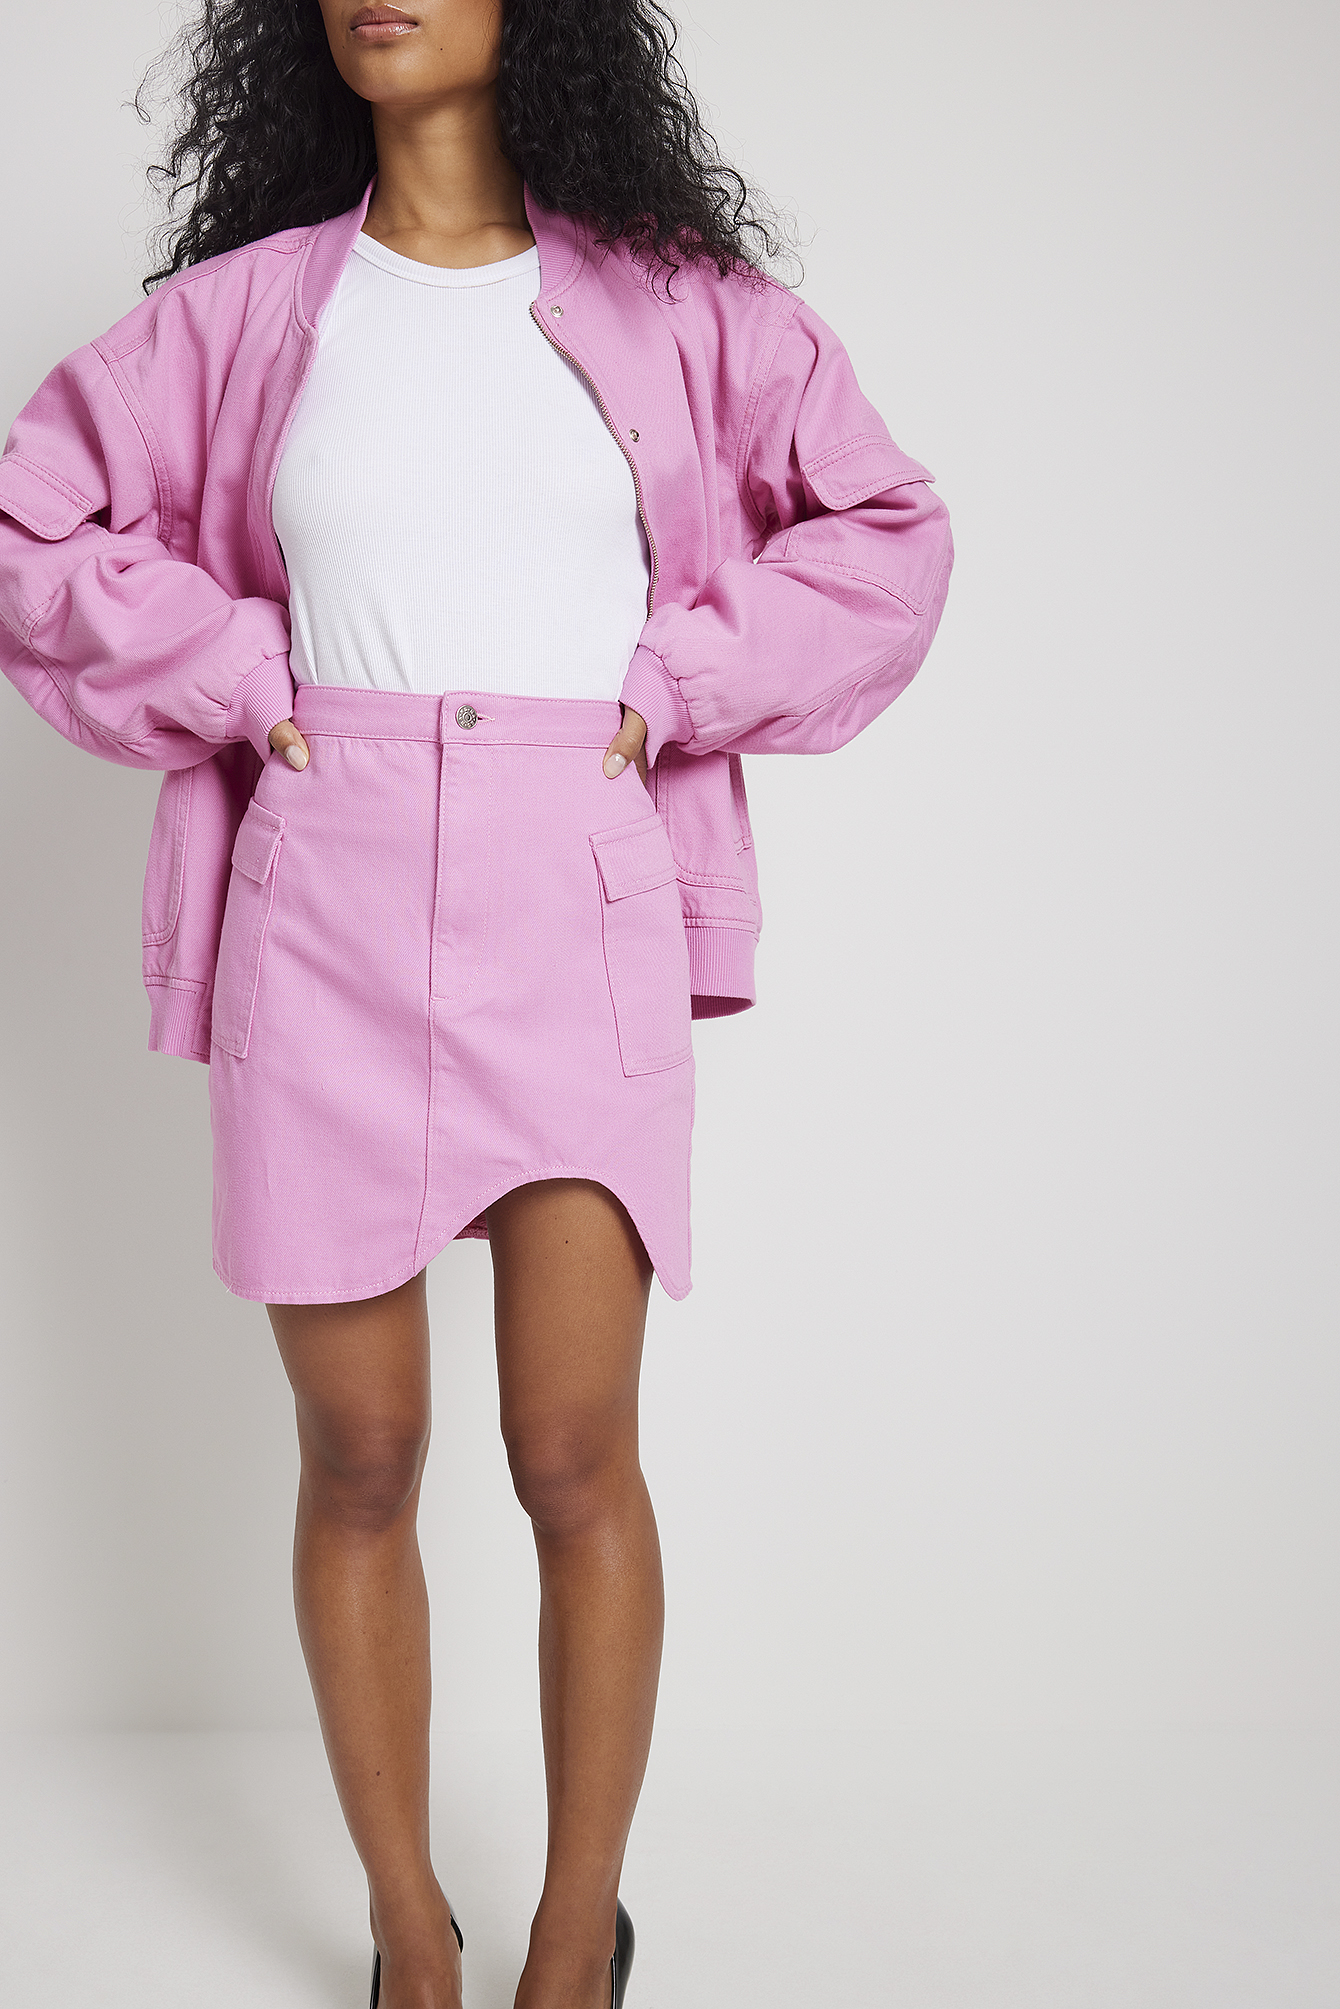 Asos Spijkerrok roze casual uitstraling Mode Rokken Spijkerrokken 